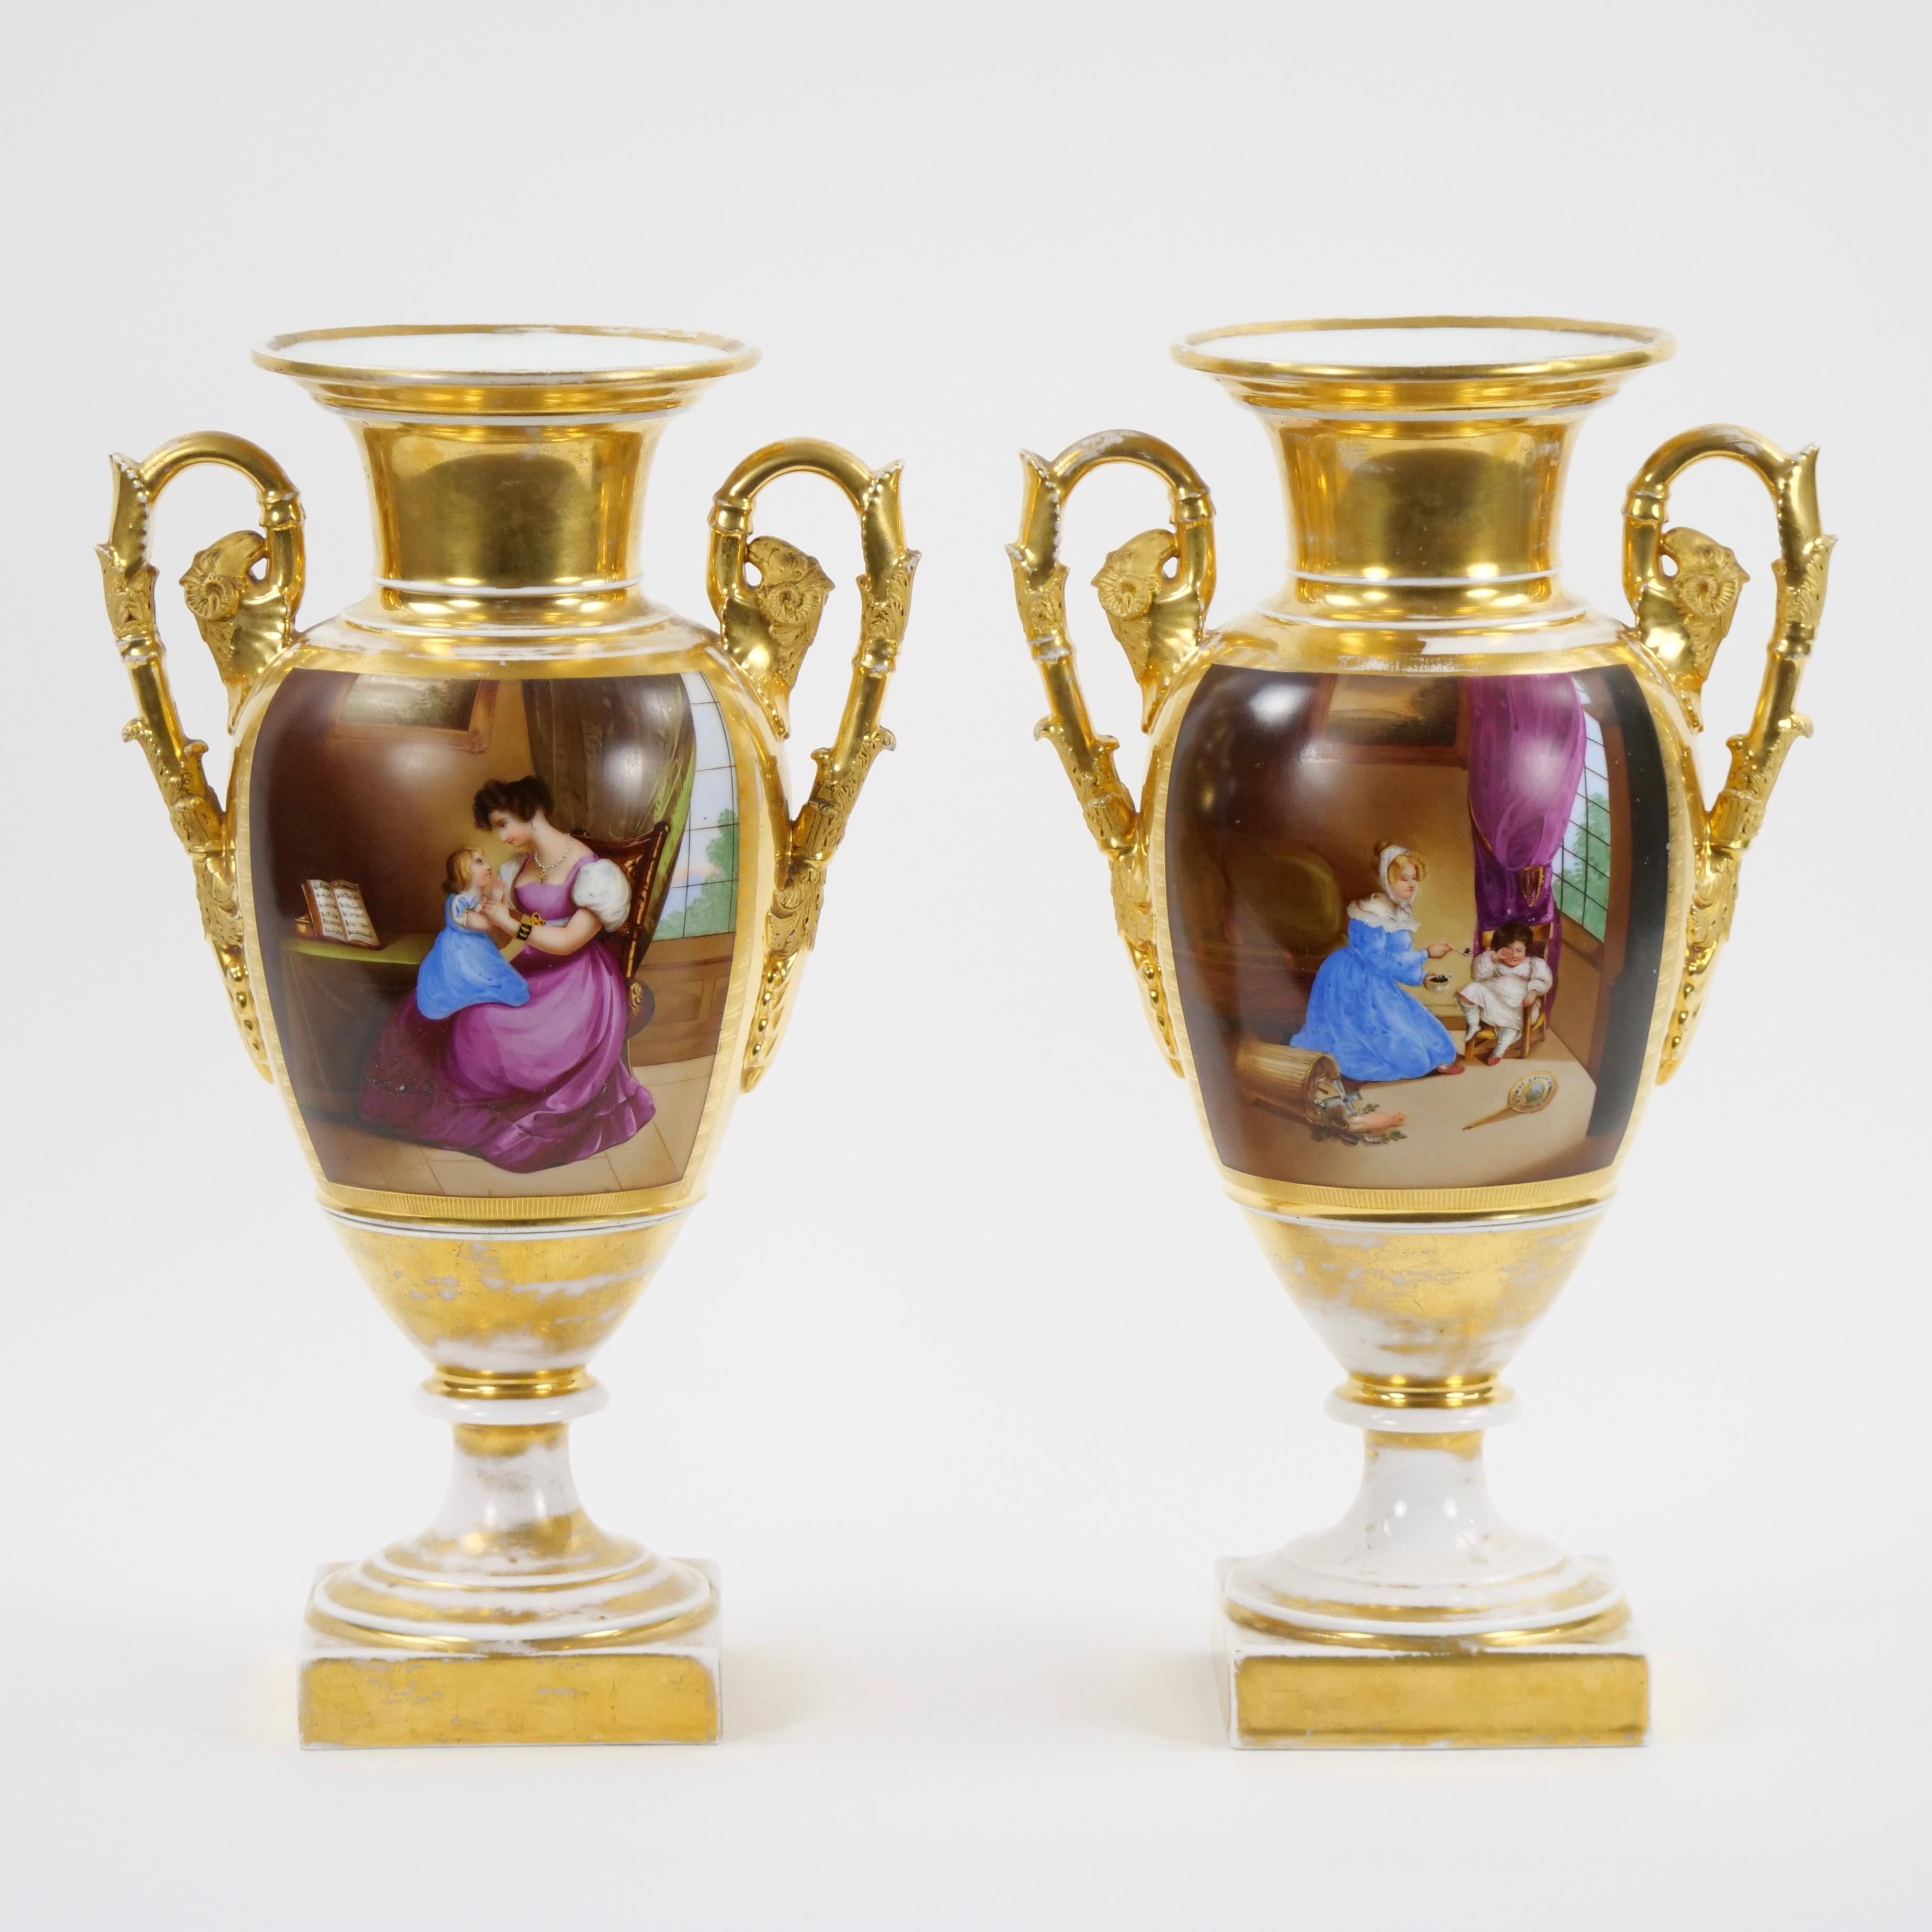 Entdecken Sie die zeitlose Eleganz eines Paars Pariser Porzellanvasen aus dem 19. Jahrhundert, die sorgfältig mit exquisiten vergoldeten und handgemalten Dekoren verziert sind. Diese Vasen sind der Inbegriff von Kunsthandwerk und historischem Charme